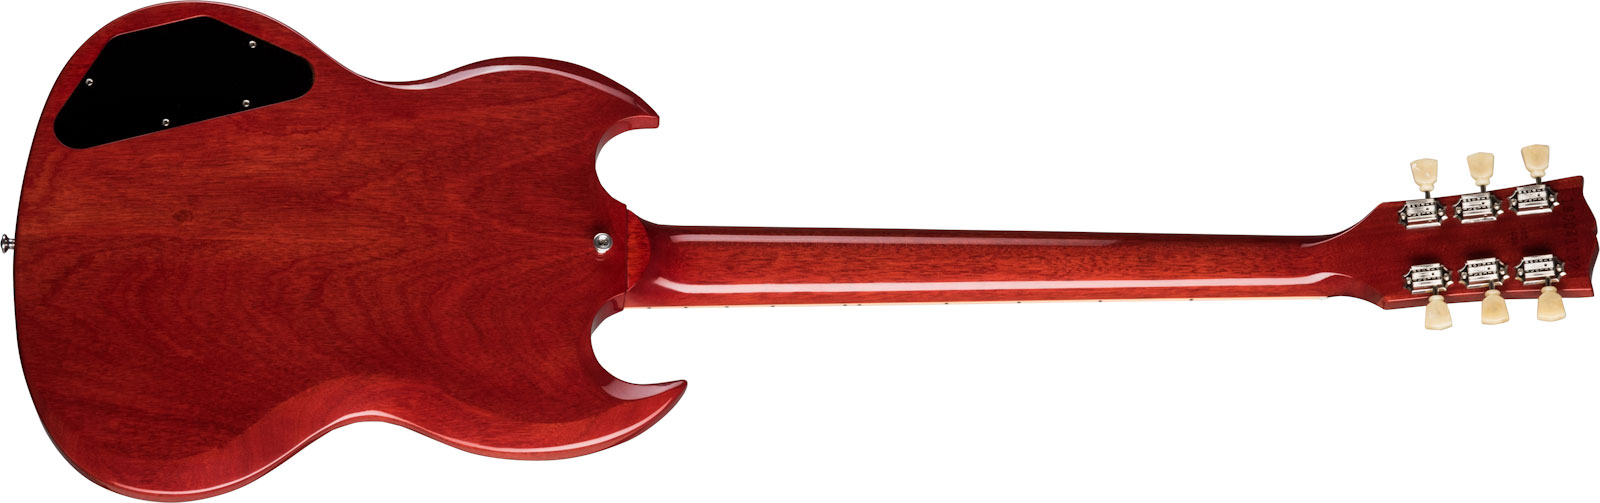 Gibson Sg Standard '61 2h Ht Rw - Vintage Cherry - Retro-rock elektrische gitaar - Variation 1